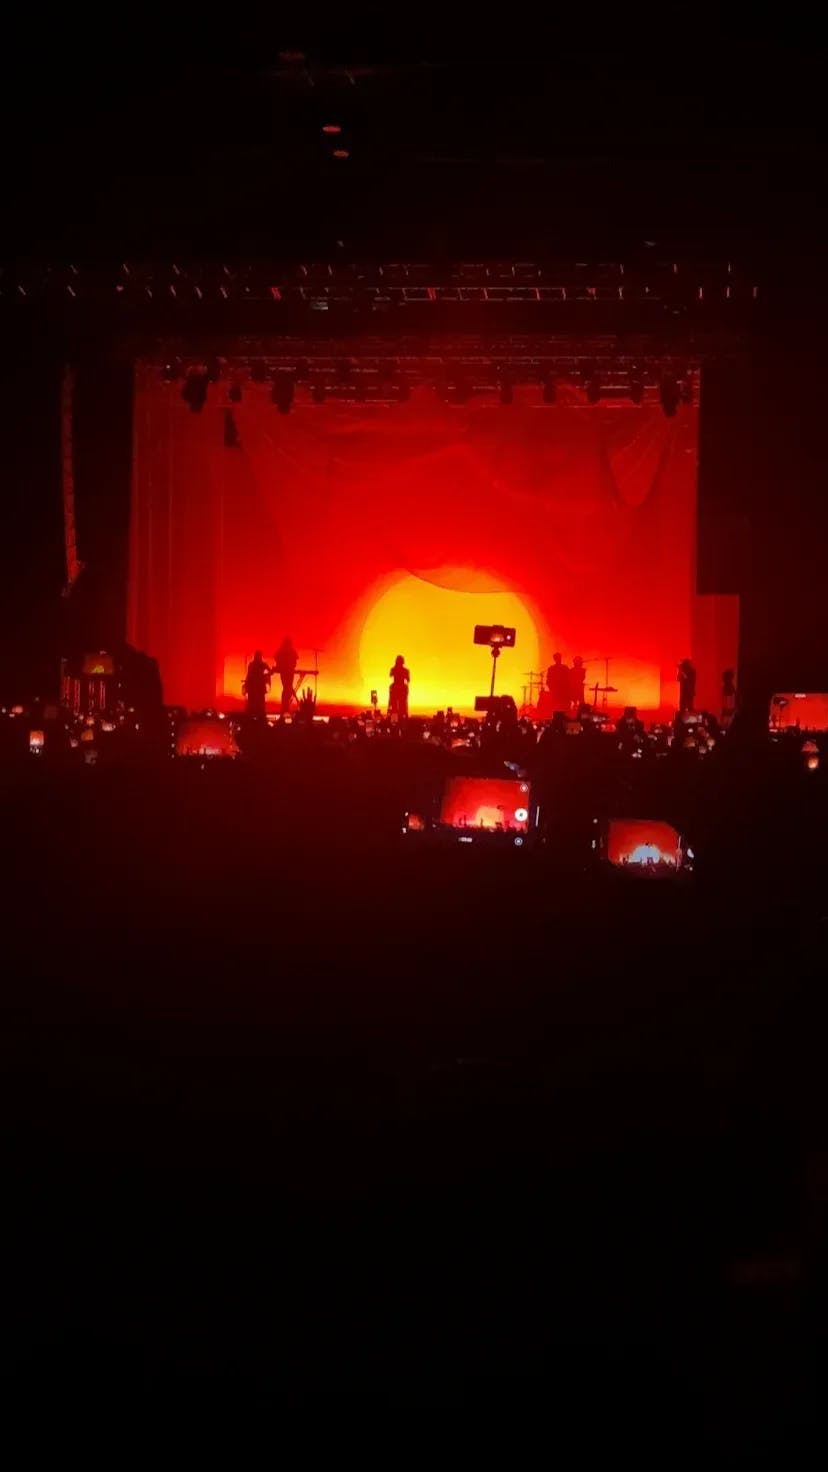 Foto de un concierto de la artista Aurora donde se ve su silueta con un fondo rojo similar a un atardecer.